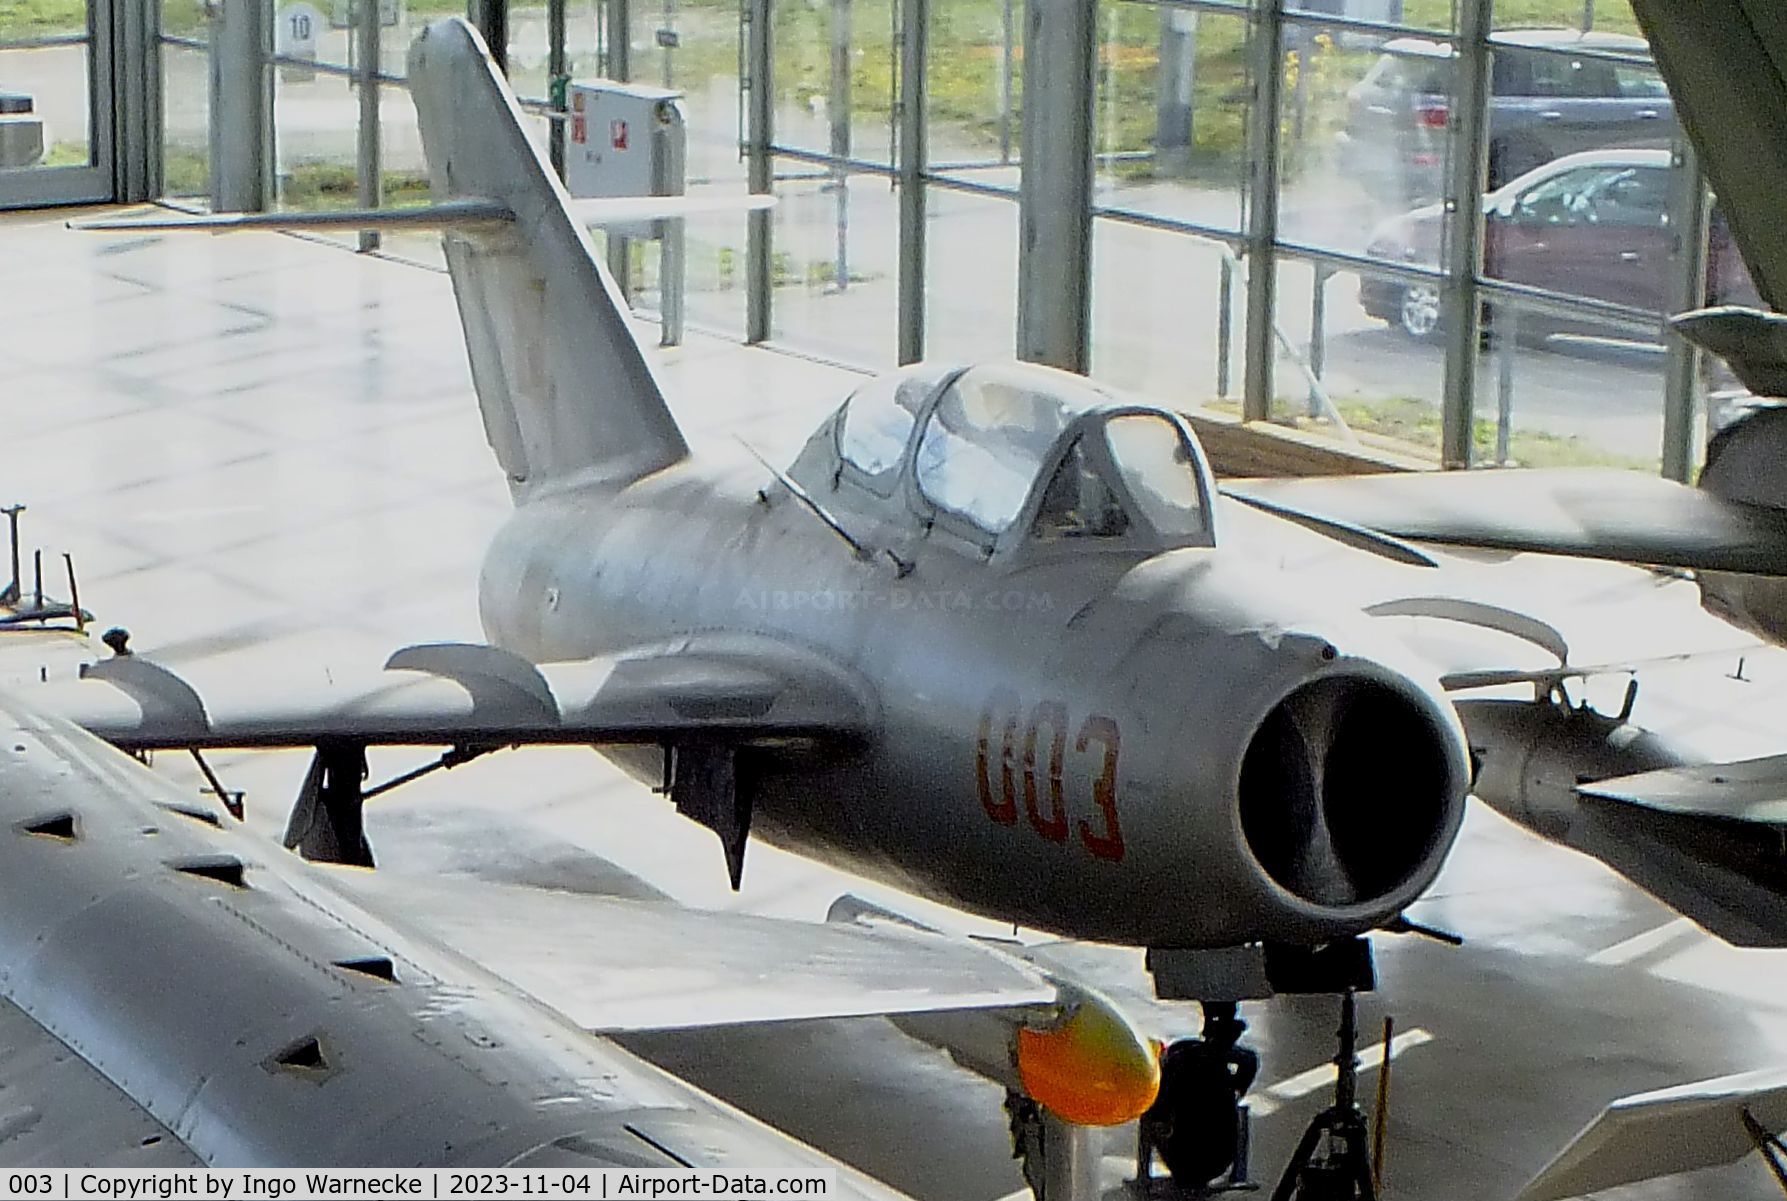 003, PZL-Mielec Lim-2 (MiG-15bis) (MiG-15bis) C/N 1A08003, PZL-Mielec SBLim-1 (MiG-15UTI) MIDGET at the Flugwerft Schleißheim of Deutsches Museum, Oberschleißheim